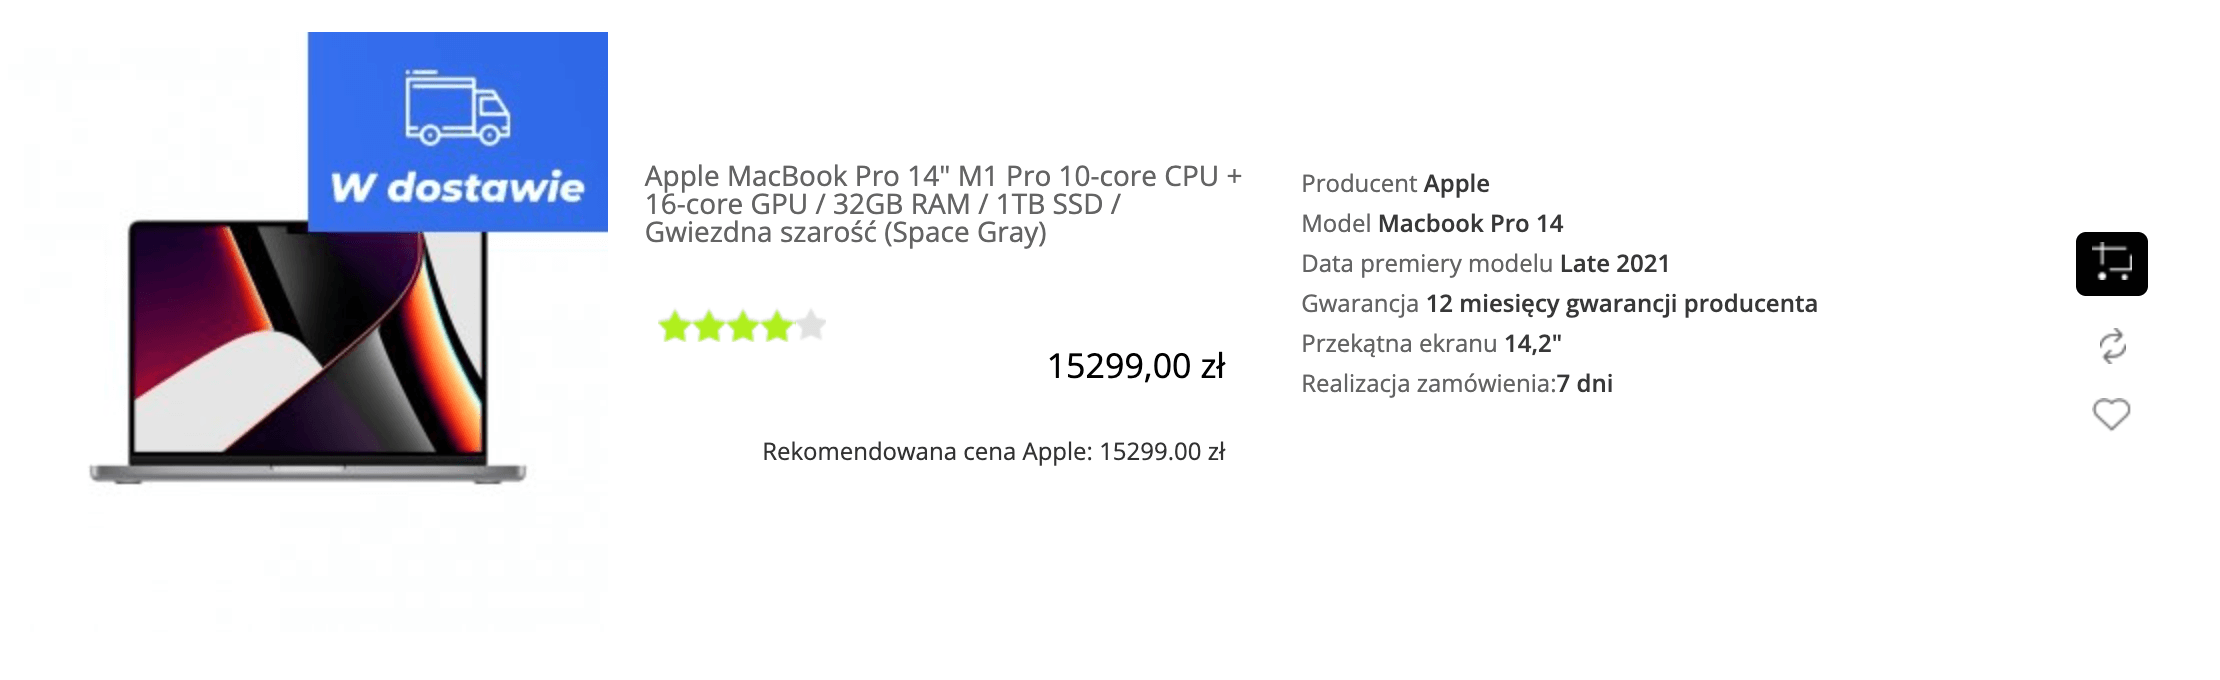 Apple MacBook Pro 14 cala M1 Pro 10-core CPU + 16-core GPU / 32GB RAM / 1TB SSD / Gwiezdna szarość (Space Gray) - MKGP3ZE/A/P2/R1/D1